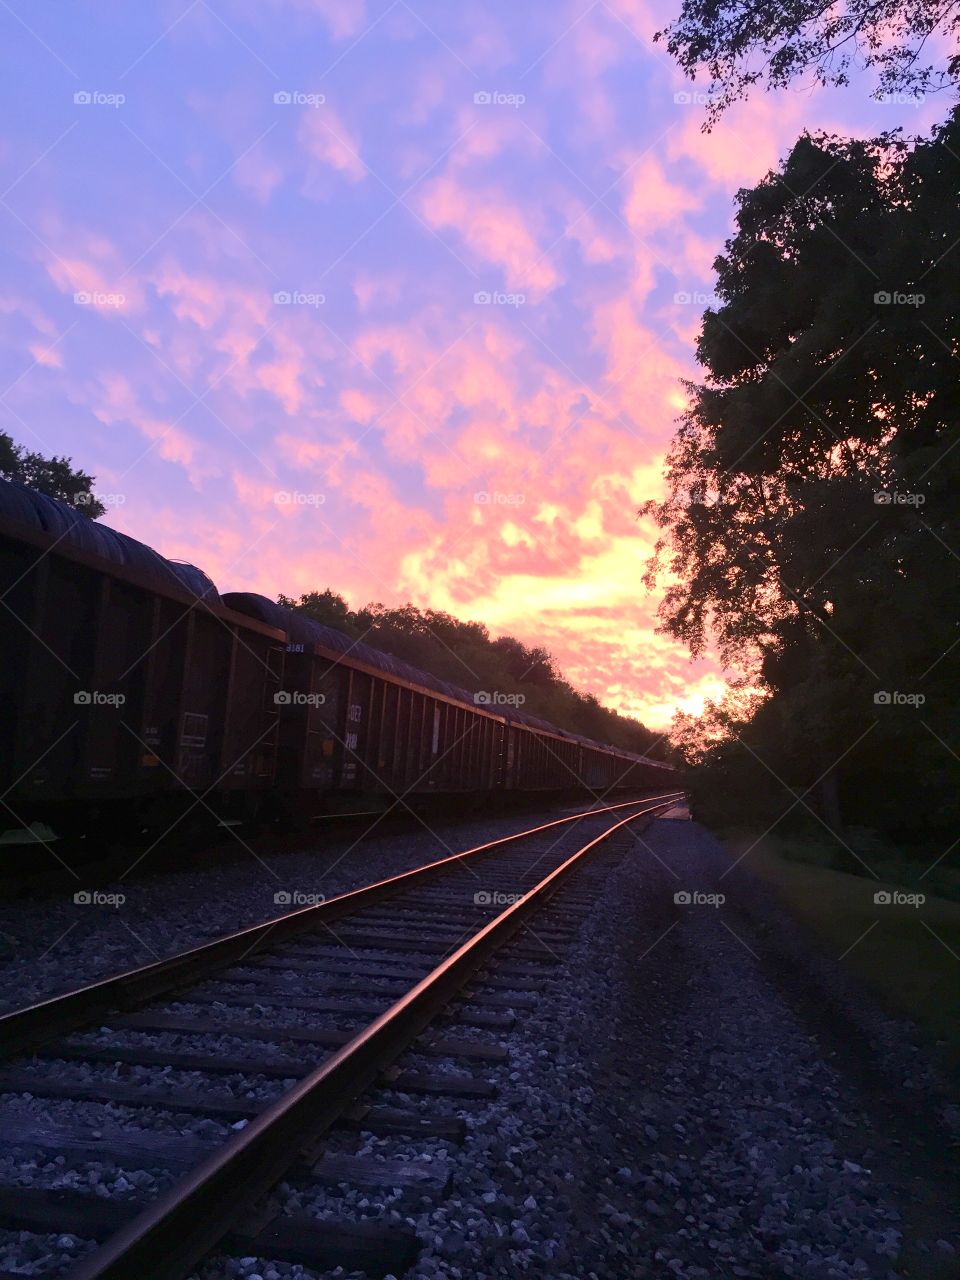 Evening train, evening sky 